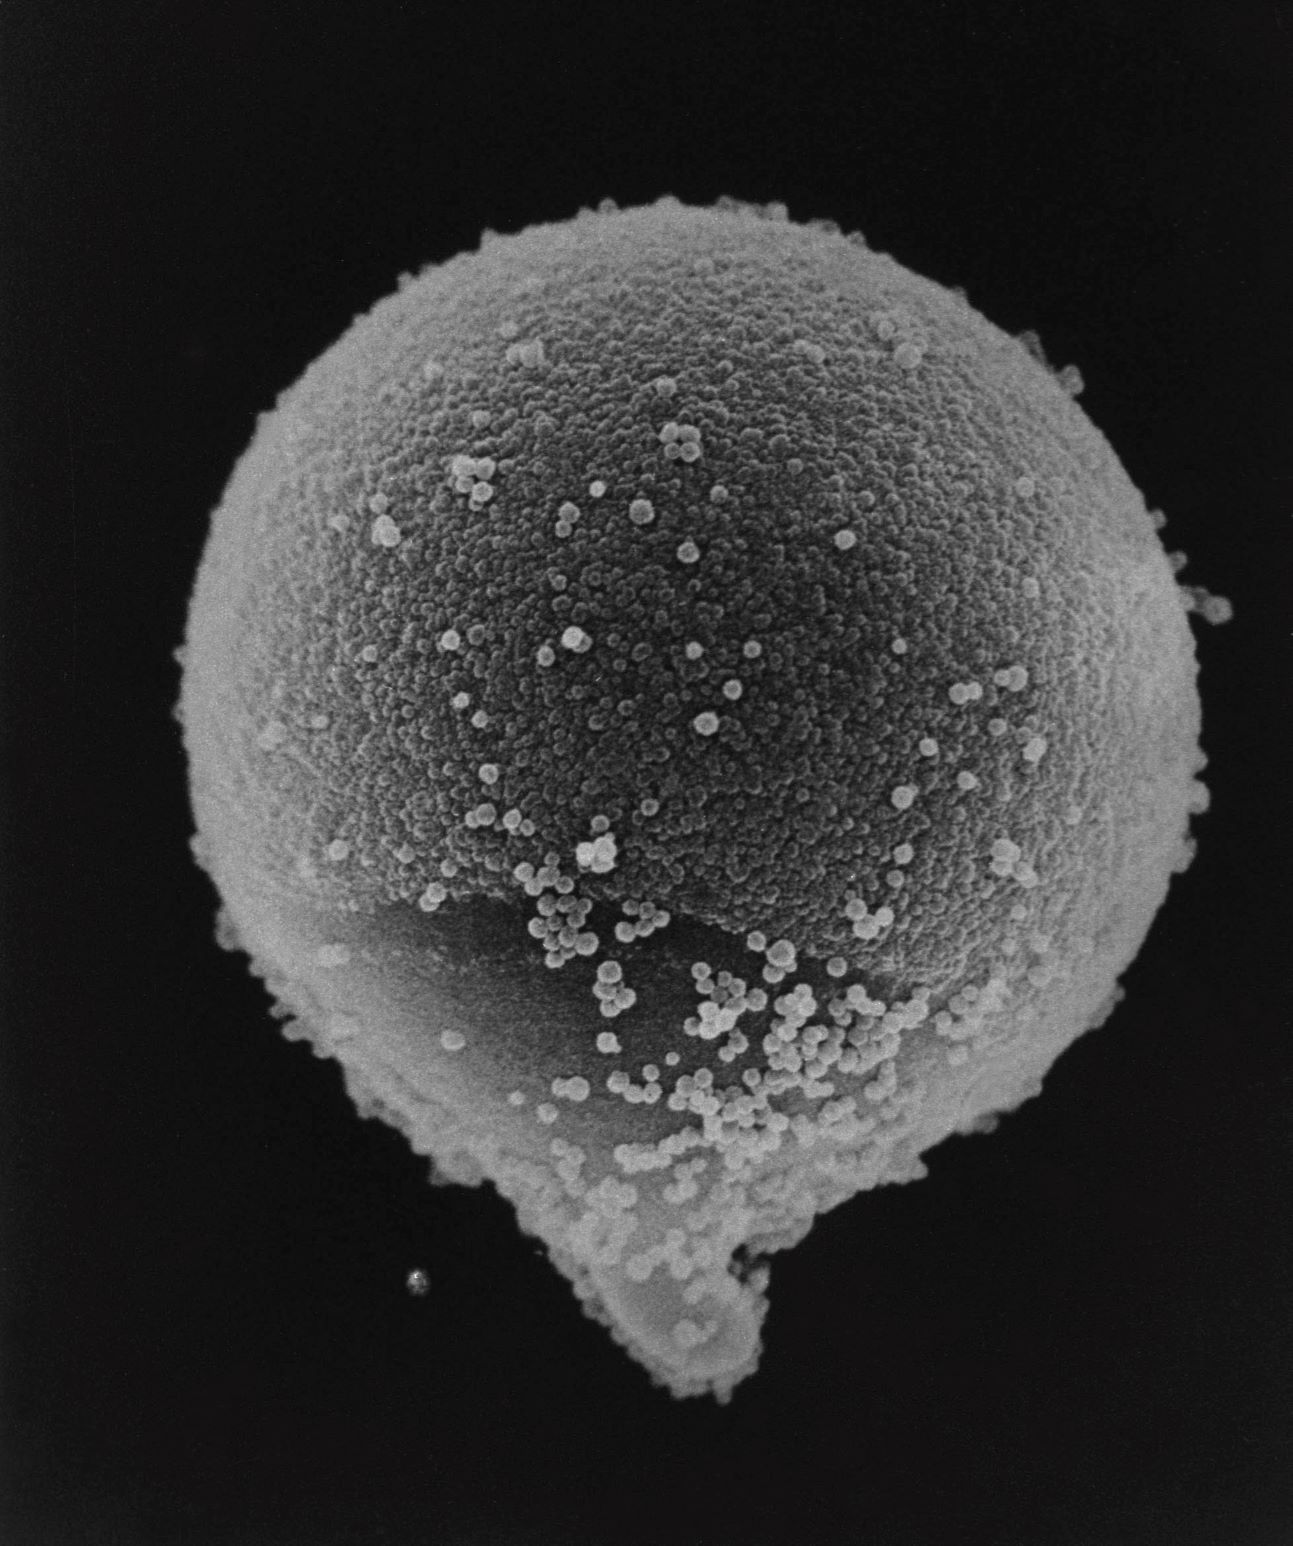 スギ花粉の顕微鏡写真。角のような突起があるのが特徴。直径は約３０ミクロン